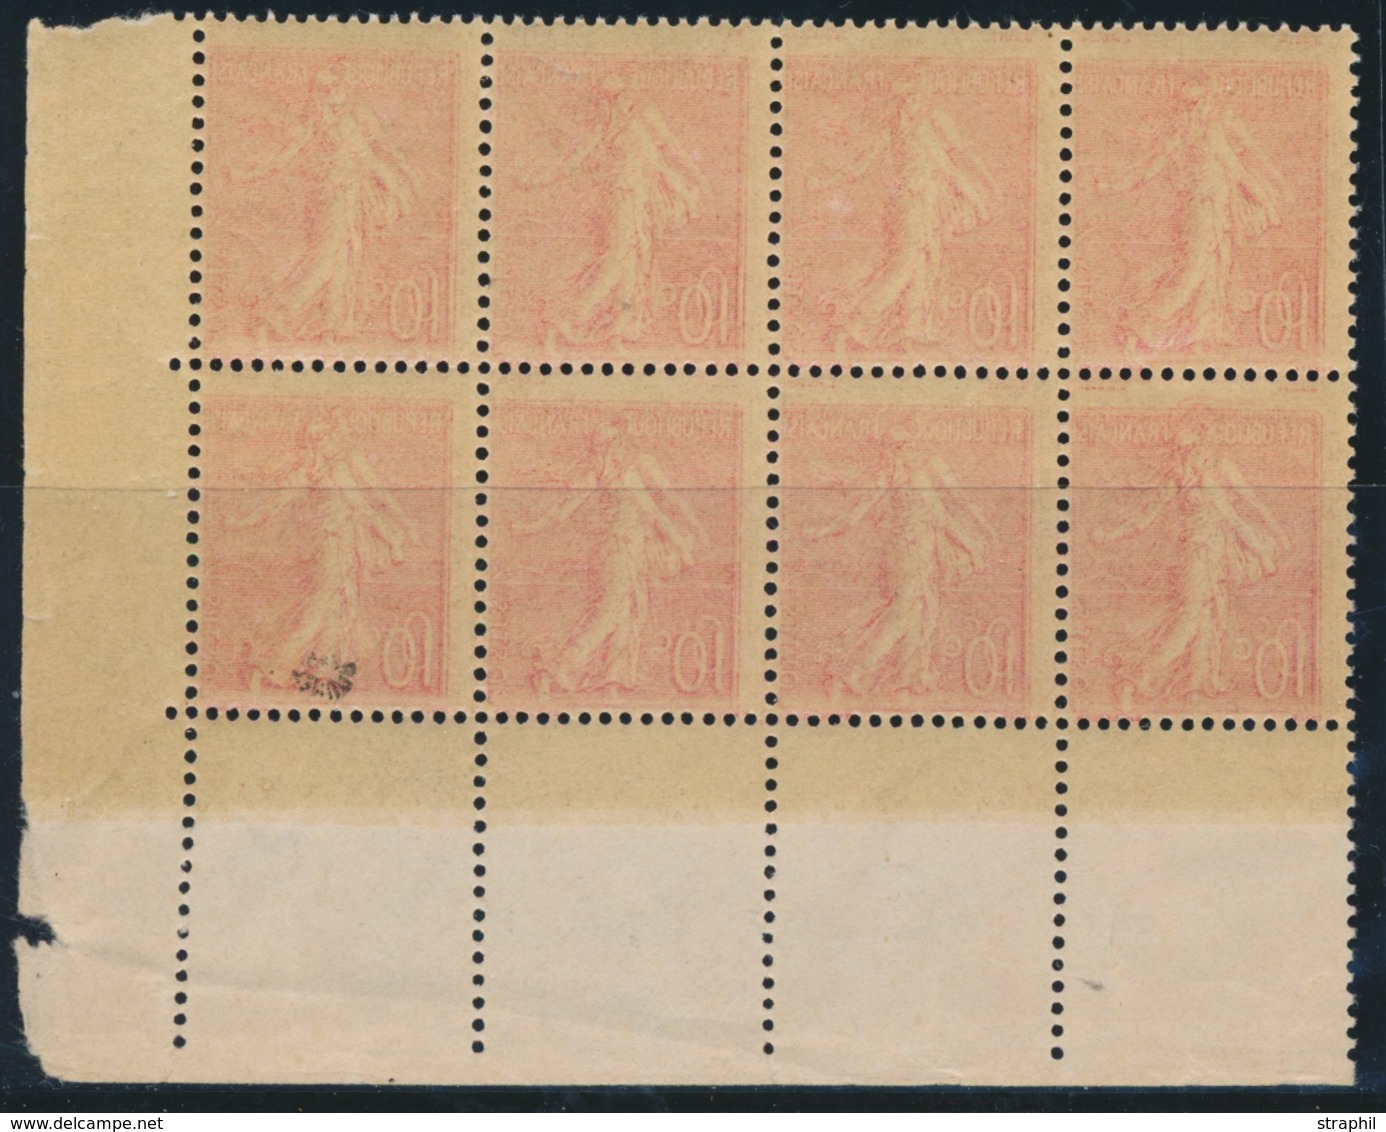 ** VARIETES  - ** - N°129 - Bloc De 8 - Impression Recto Verso - Signé Roumet - TB - Unused Stamps